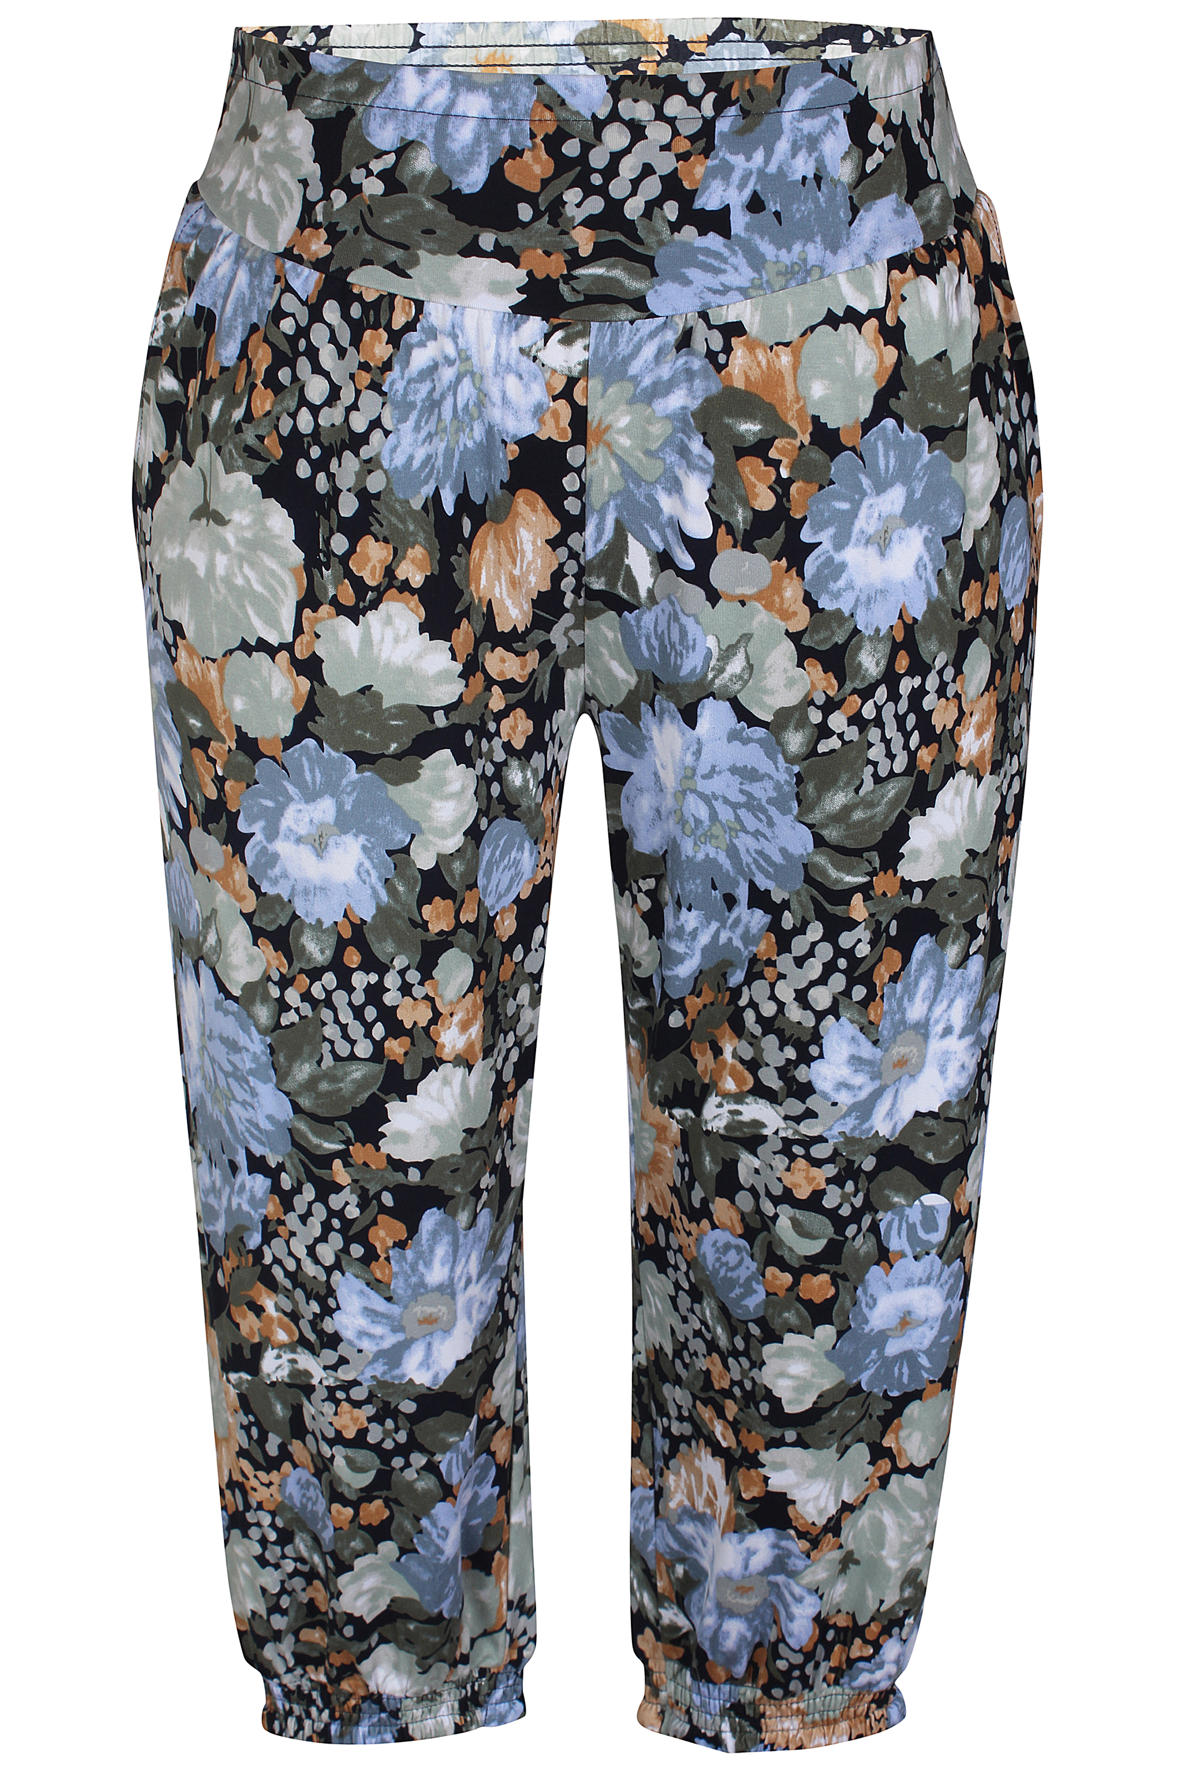 Karel jersey bukser med print til plus kvinder - Hos Lohse